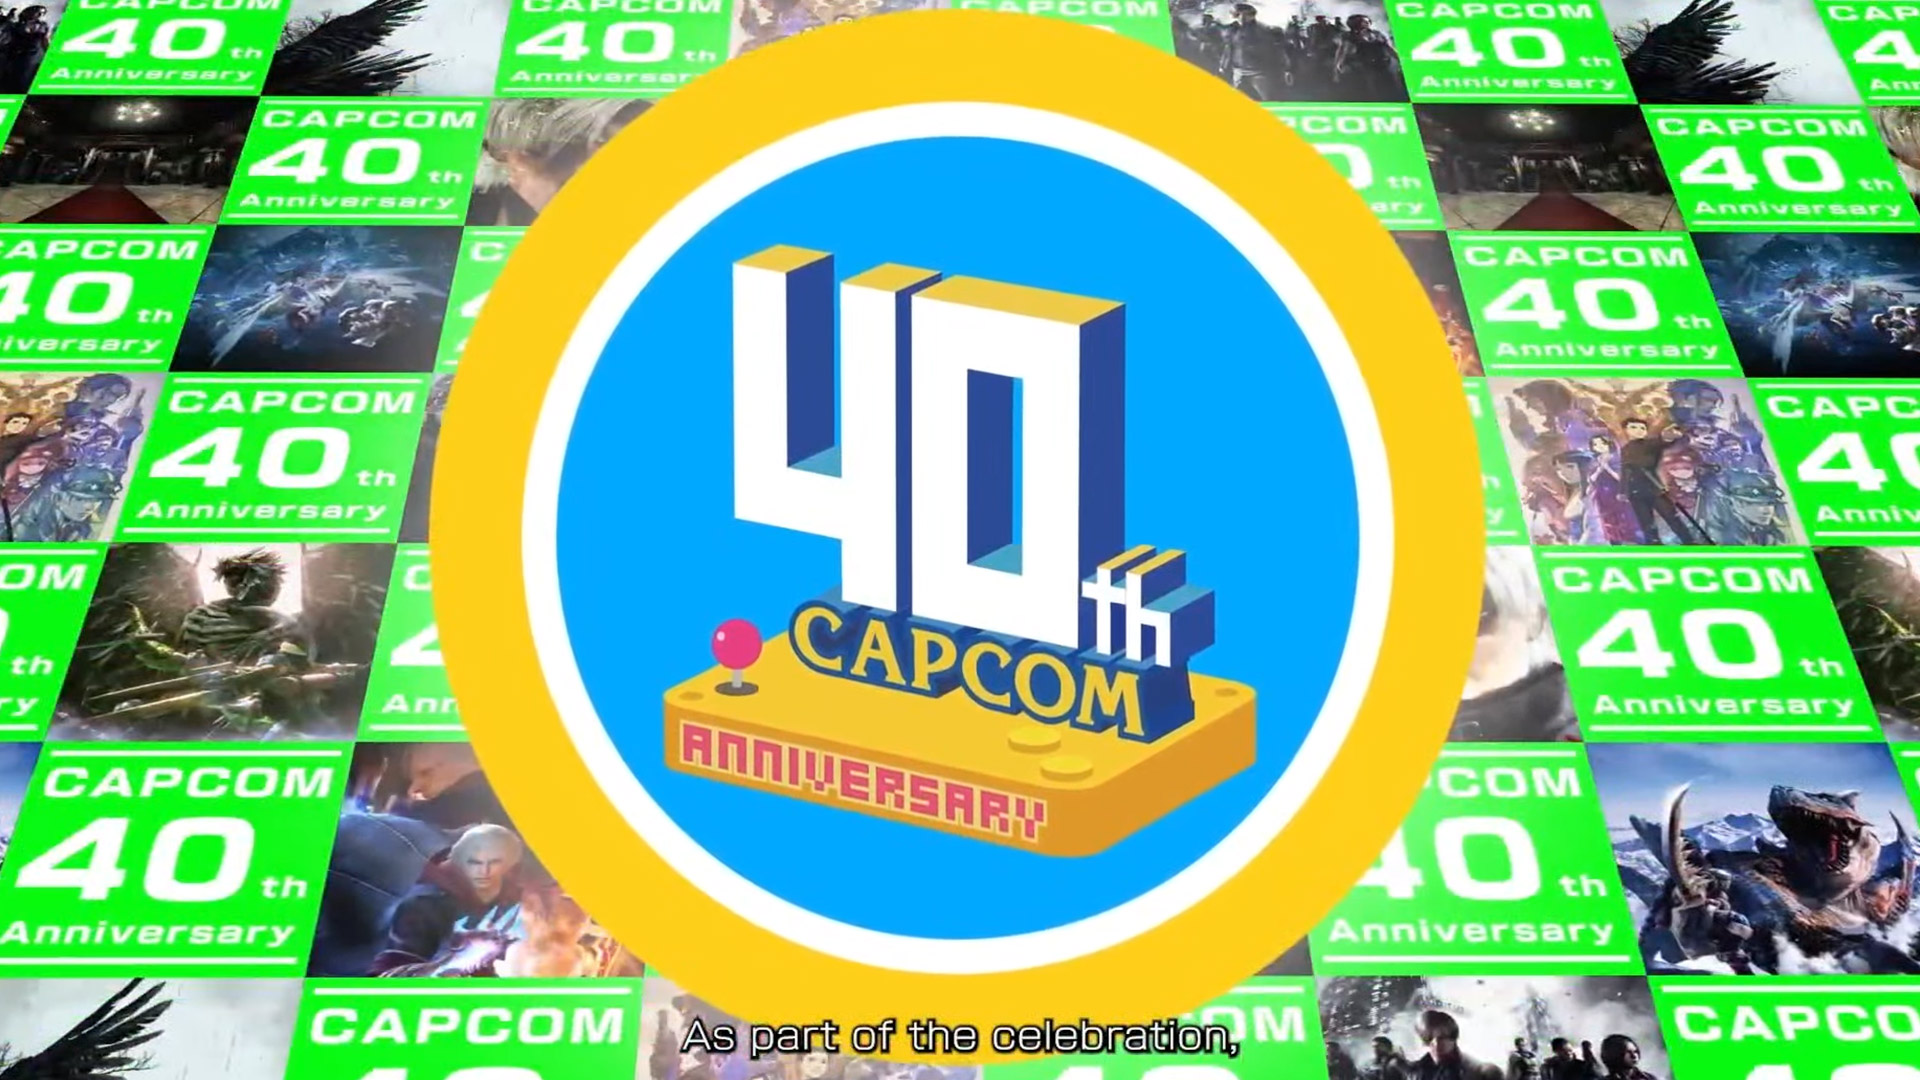 Capcom wird 40 Jahre alt! Zu Ehren dieses Ereignisses hat das Unternehmen eine Website mit einem Museum und Retro-Spielen eingerichtet